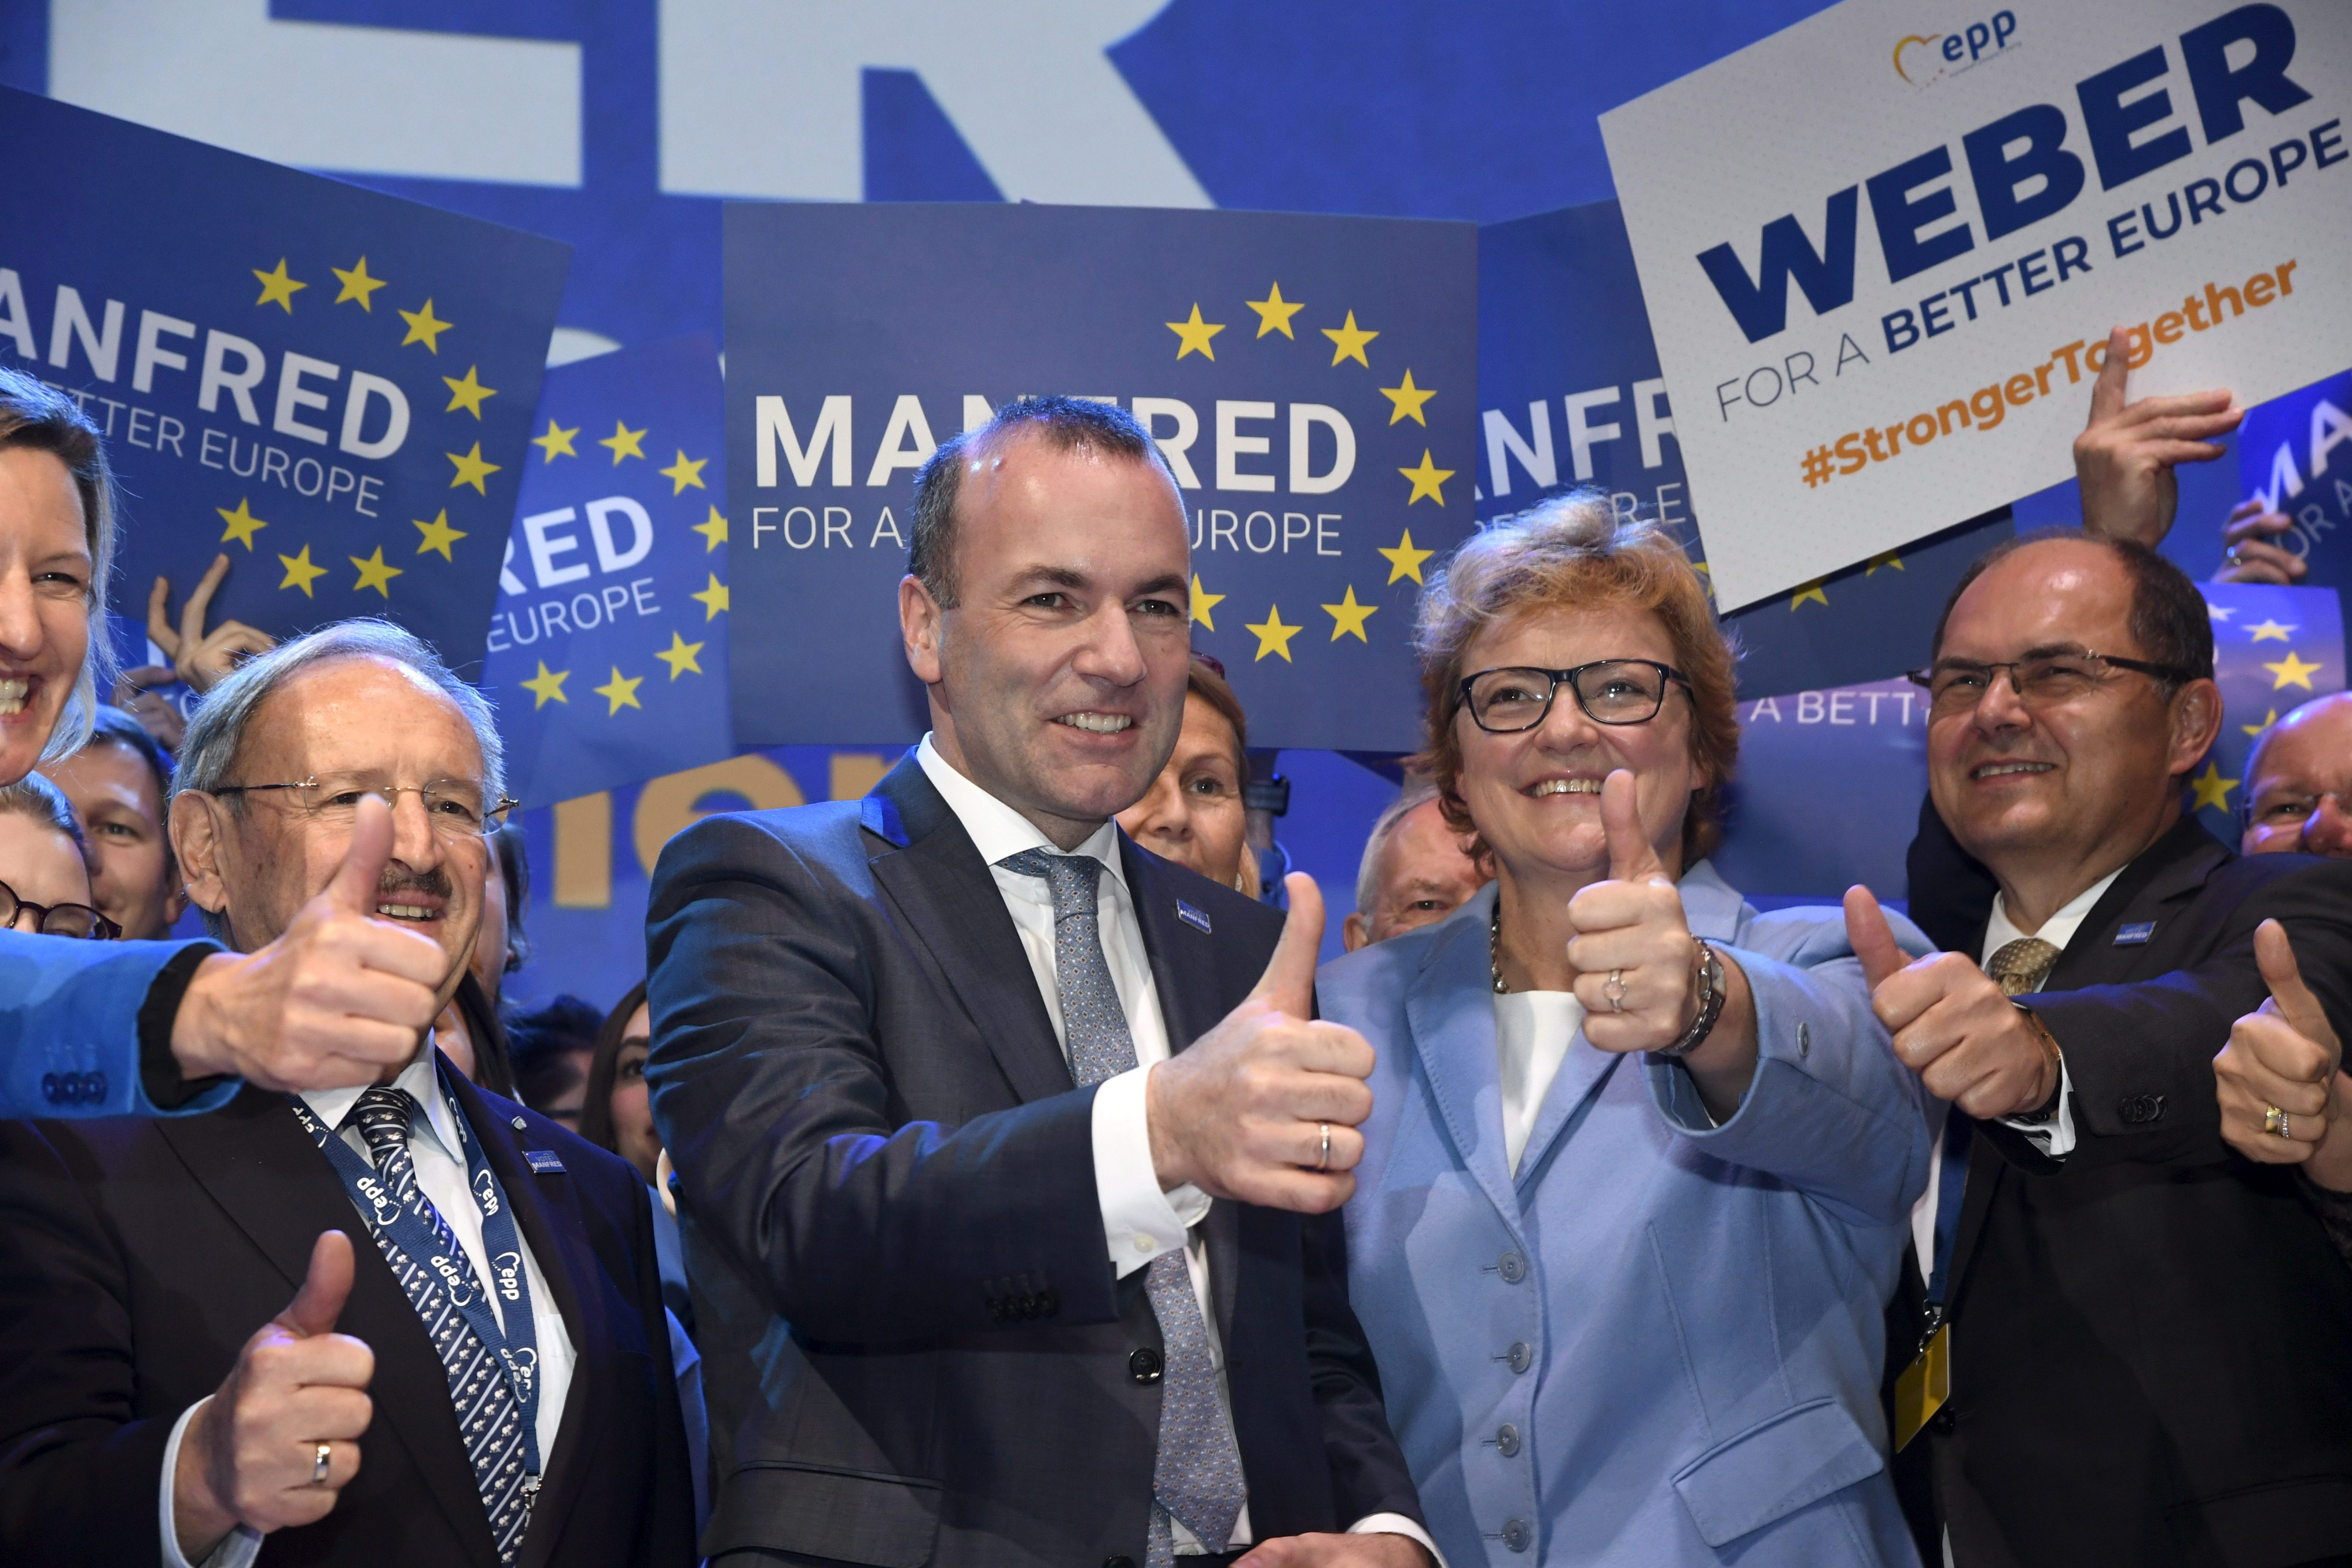 Manfred Weber lett az Európai Néppárt csúcsjelöltje